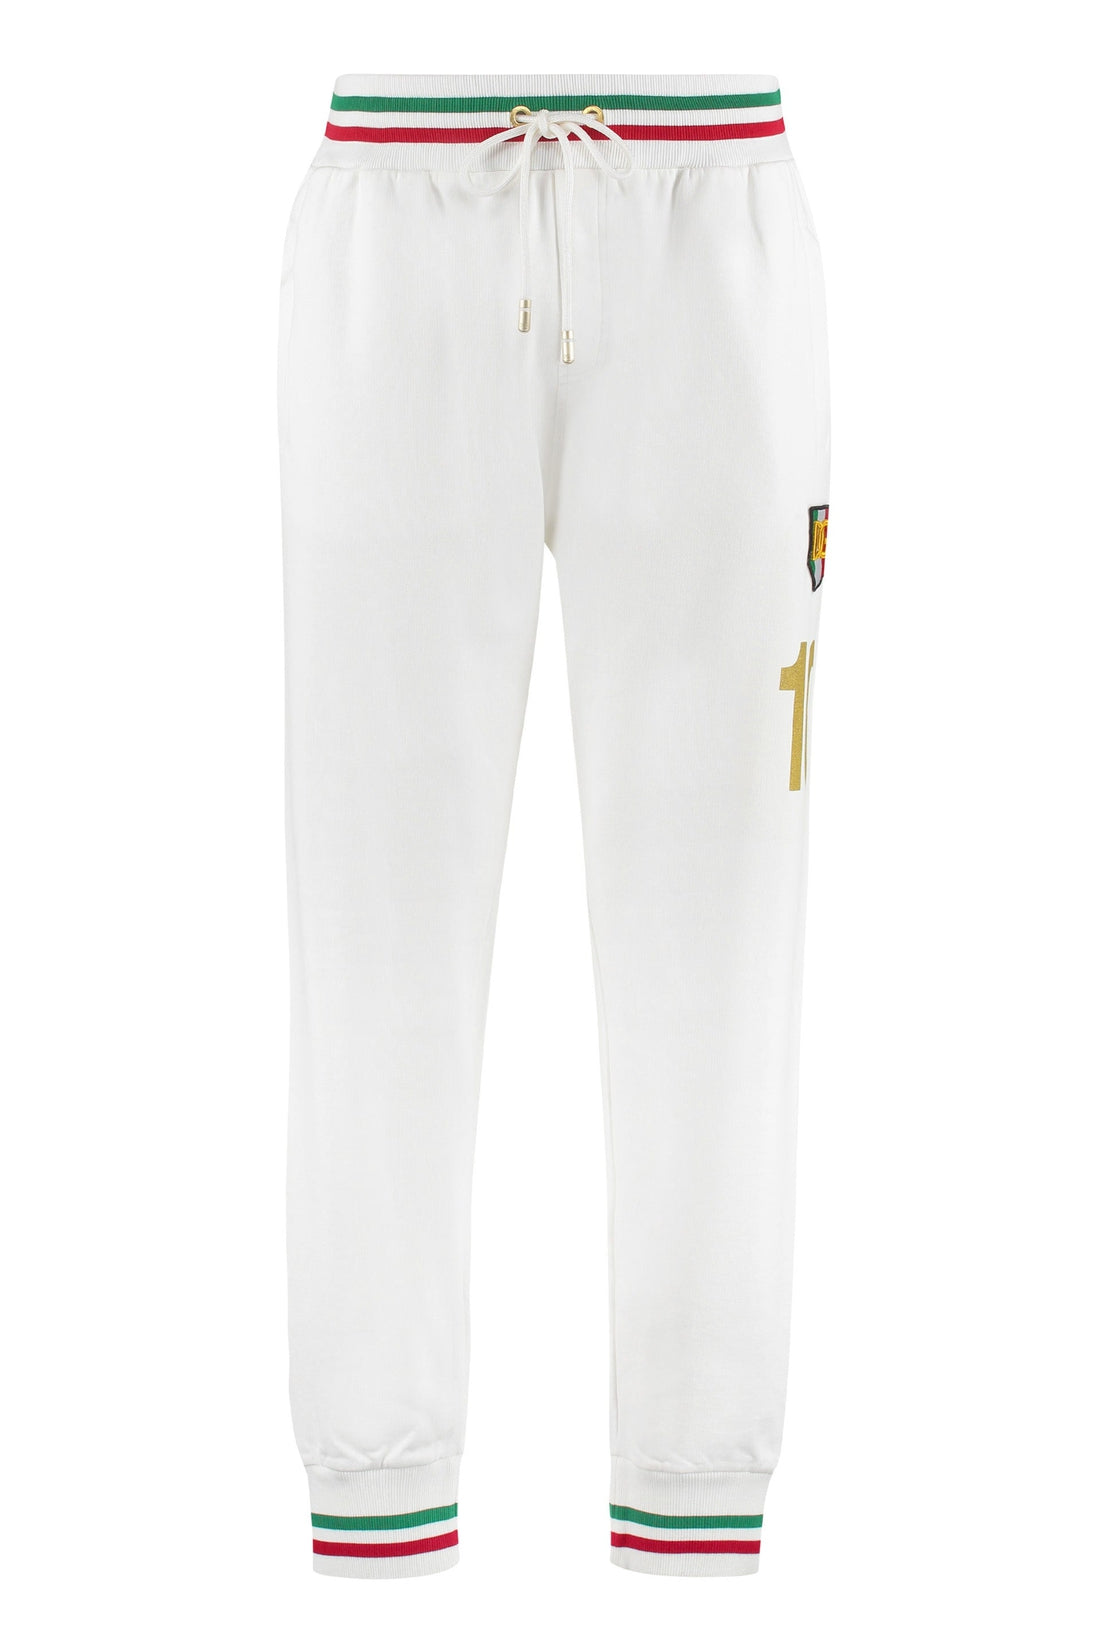 Dolce & Gabbana-OUTLET-SALE-Logo print sweatpants-ARCHIVIST